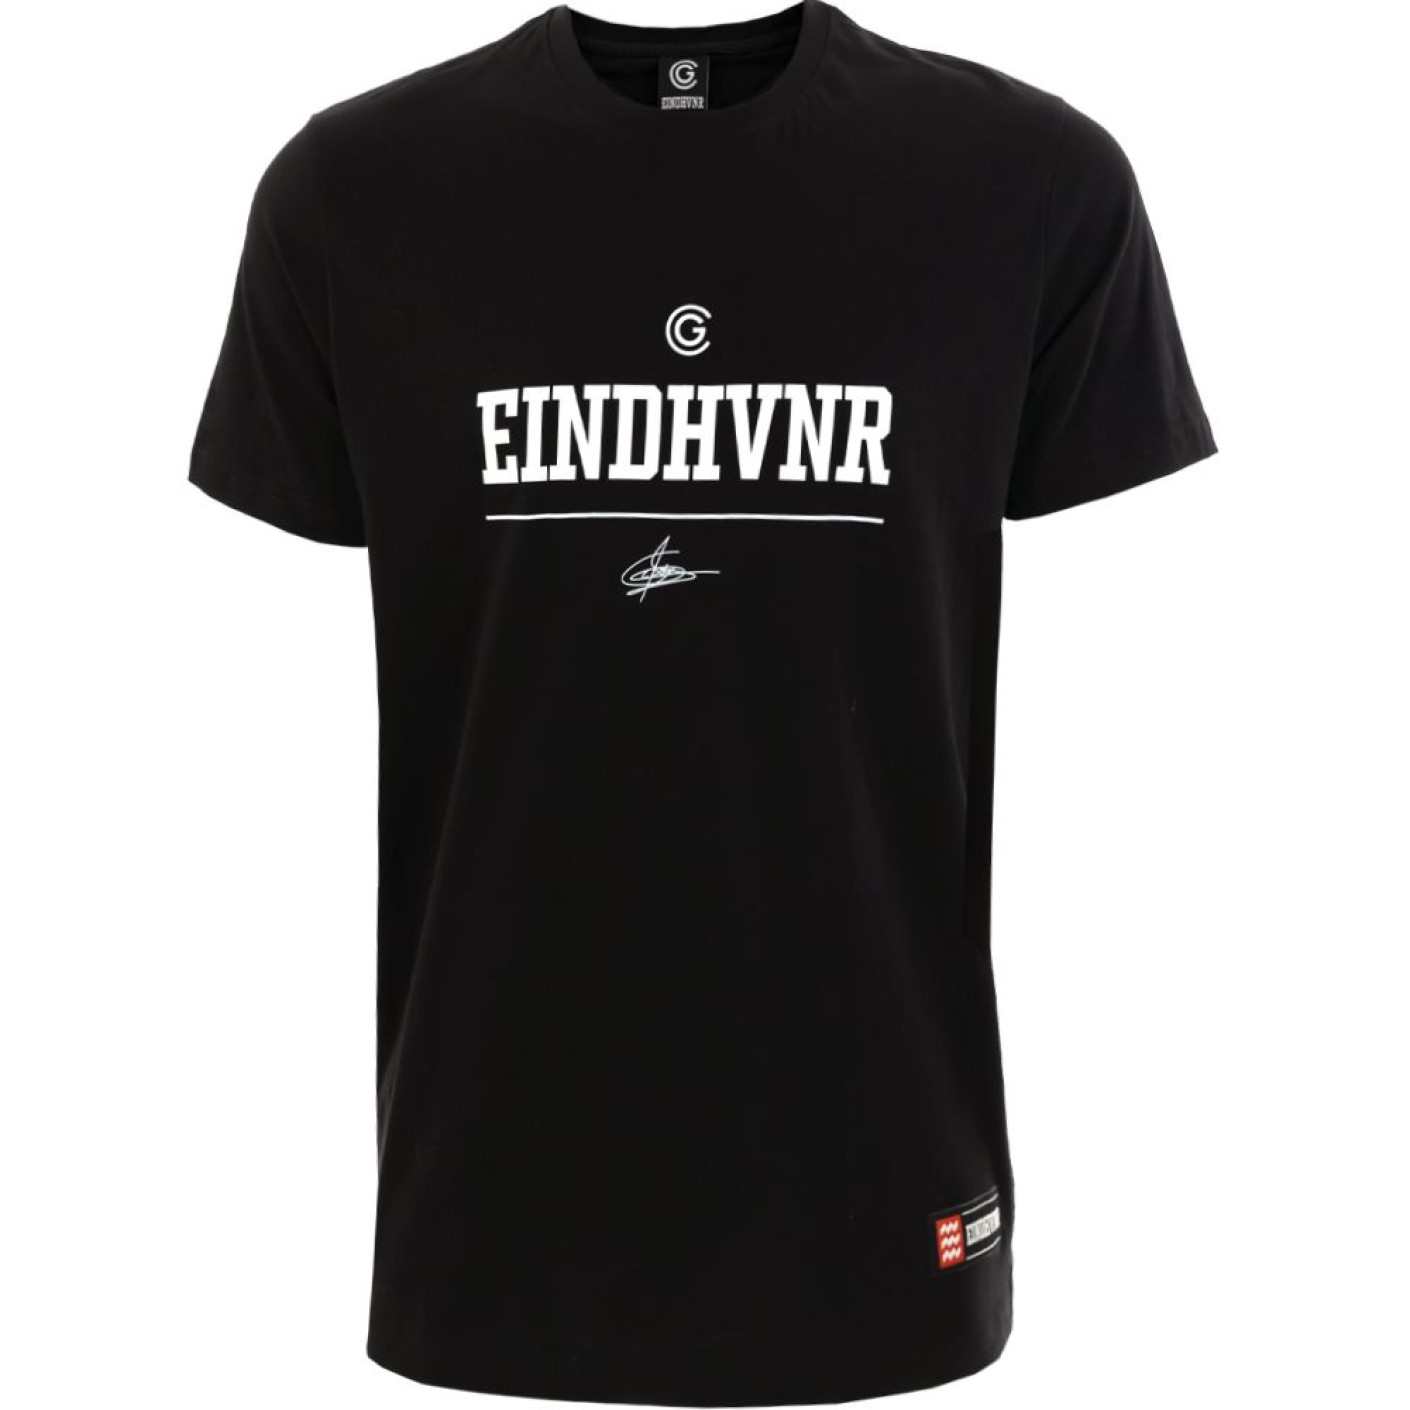 CG T-shirt EINDHVNR groot zwart